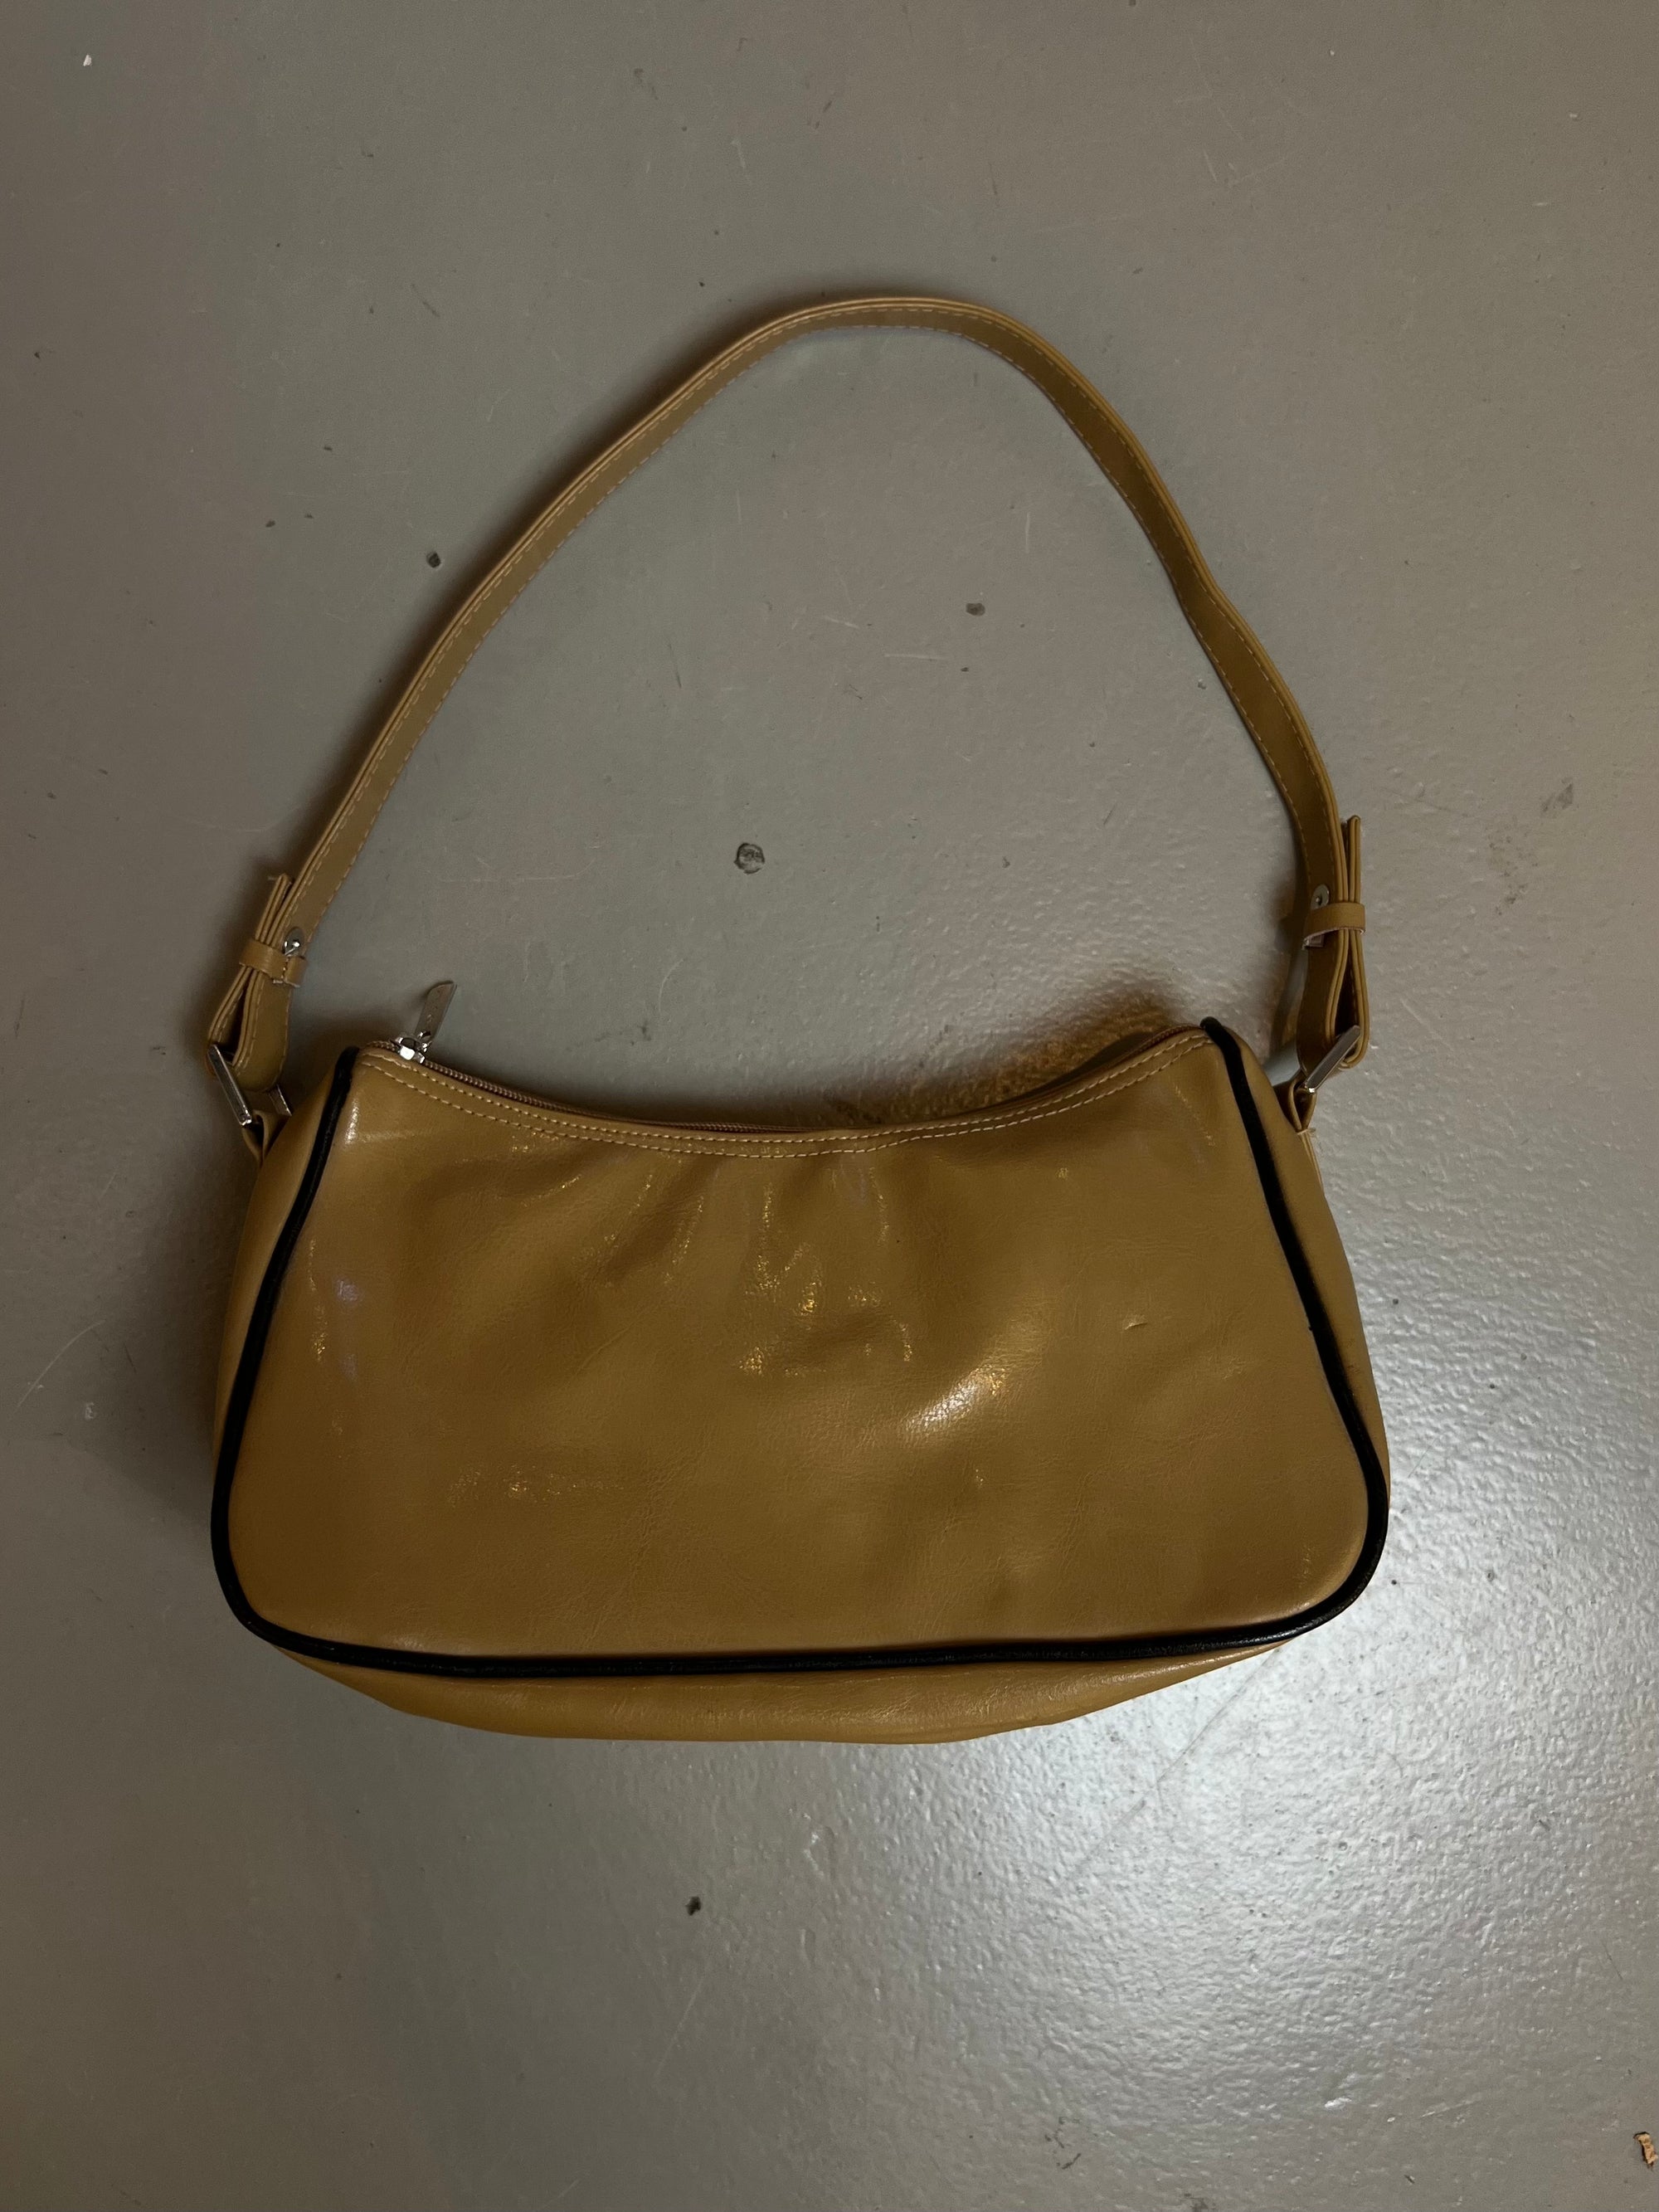 Produkt Bild der Vintage Beige Leather Bag von vorne